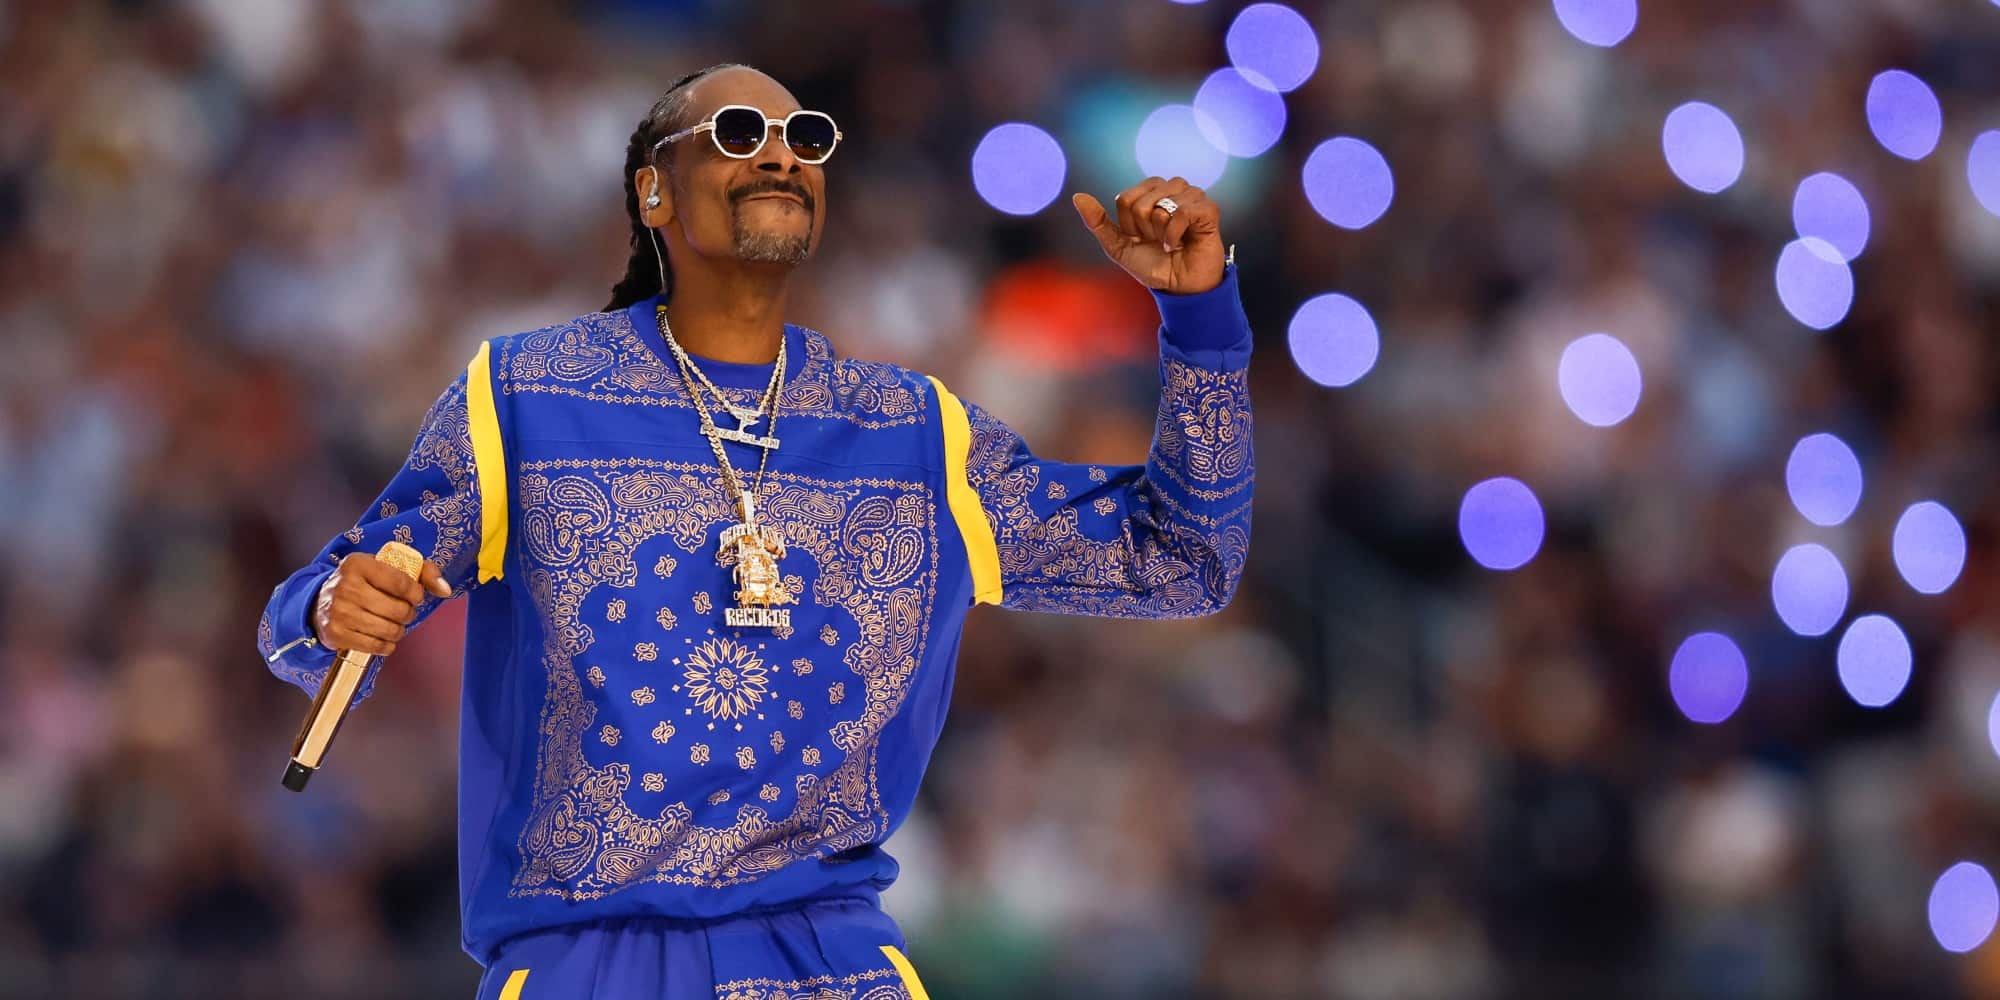 Ο Snoop Dogg θα είναι παραγωγός και πρωταγωνιστής στη νέα κωμωδία «The Underdoggs» - «Είναι προσωπικό πρότζεκτ»